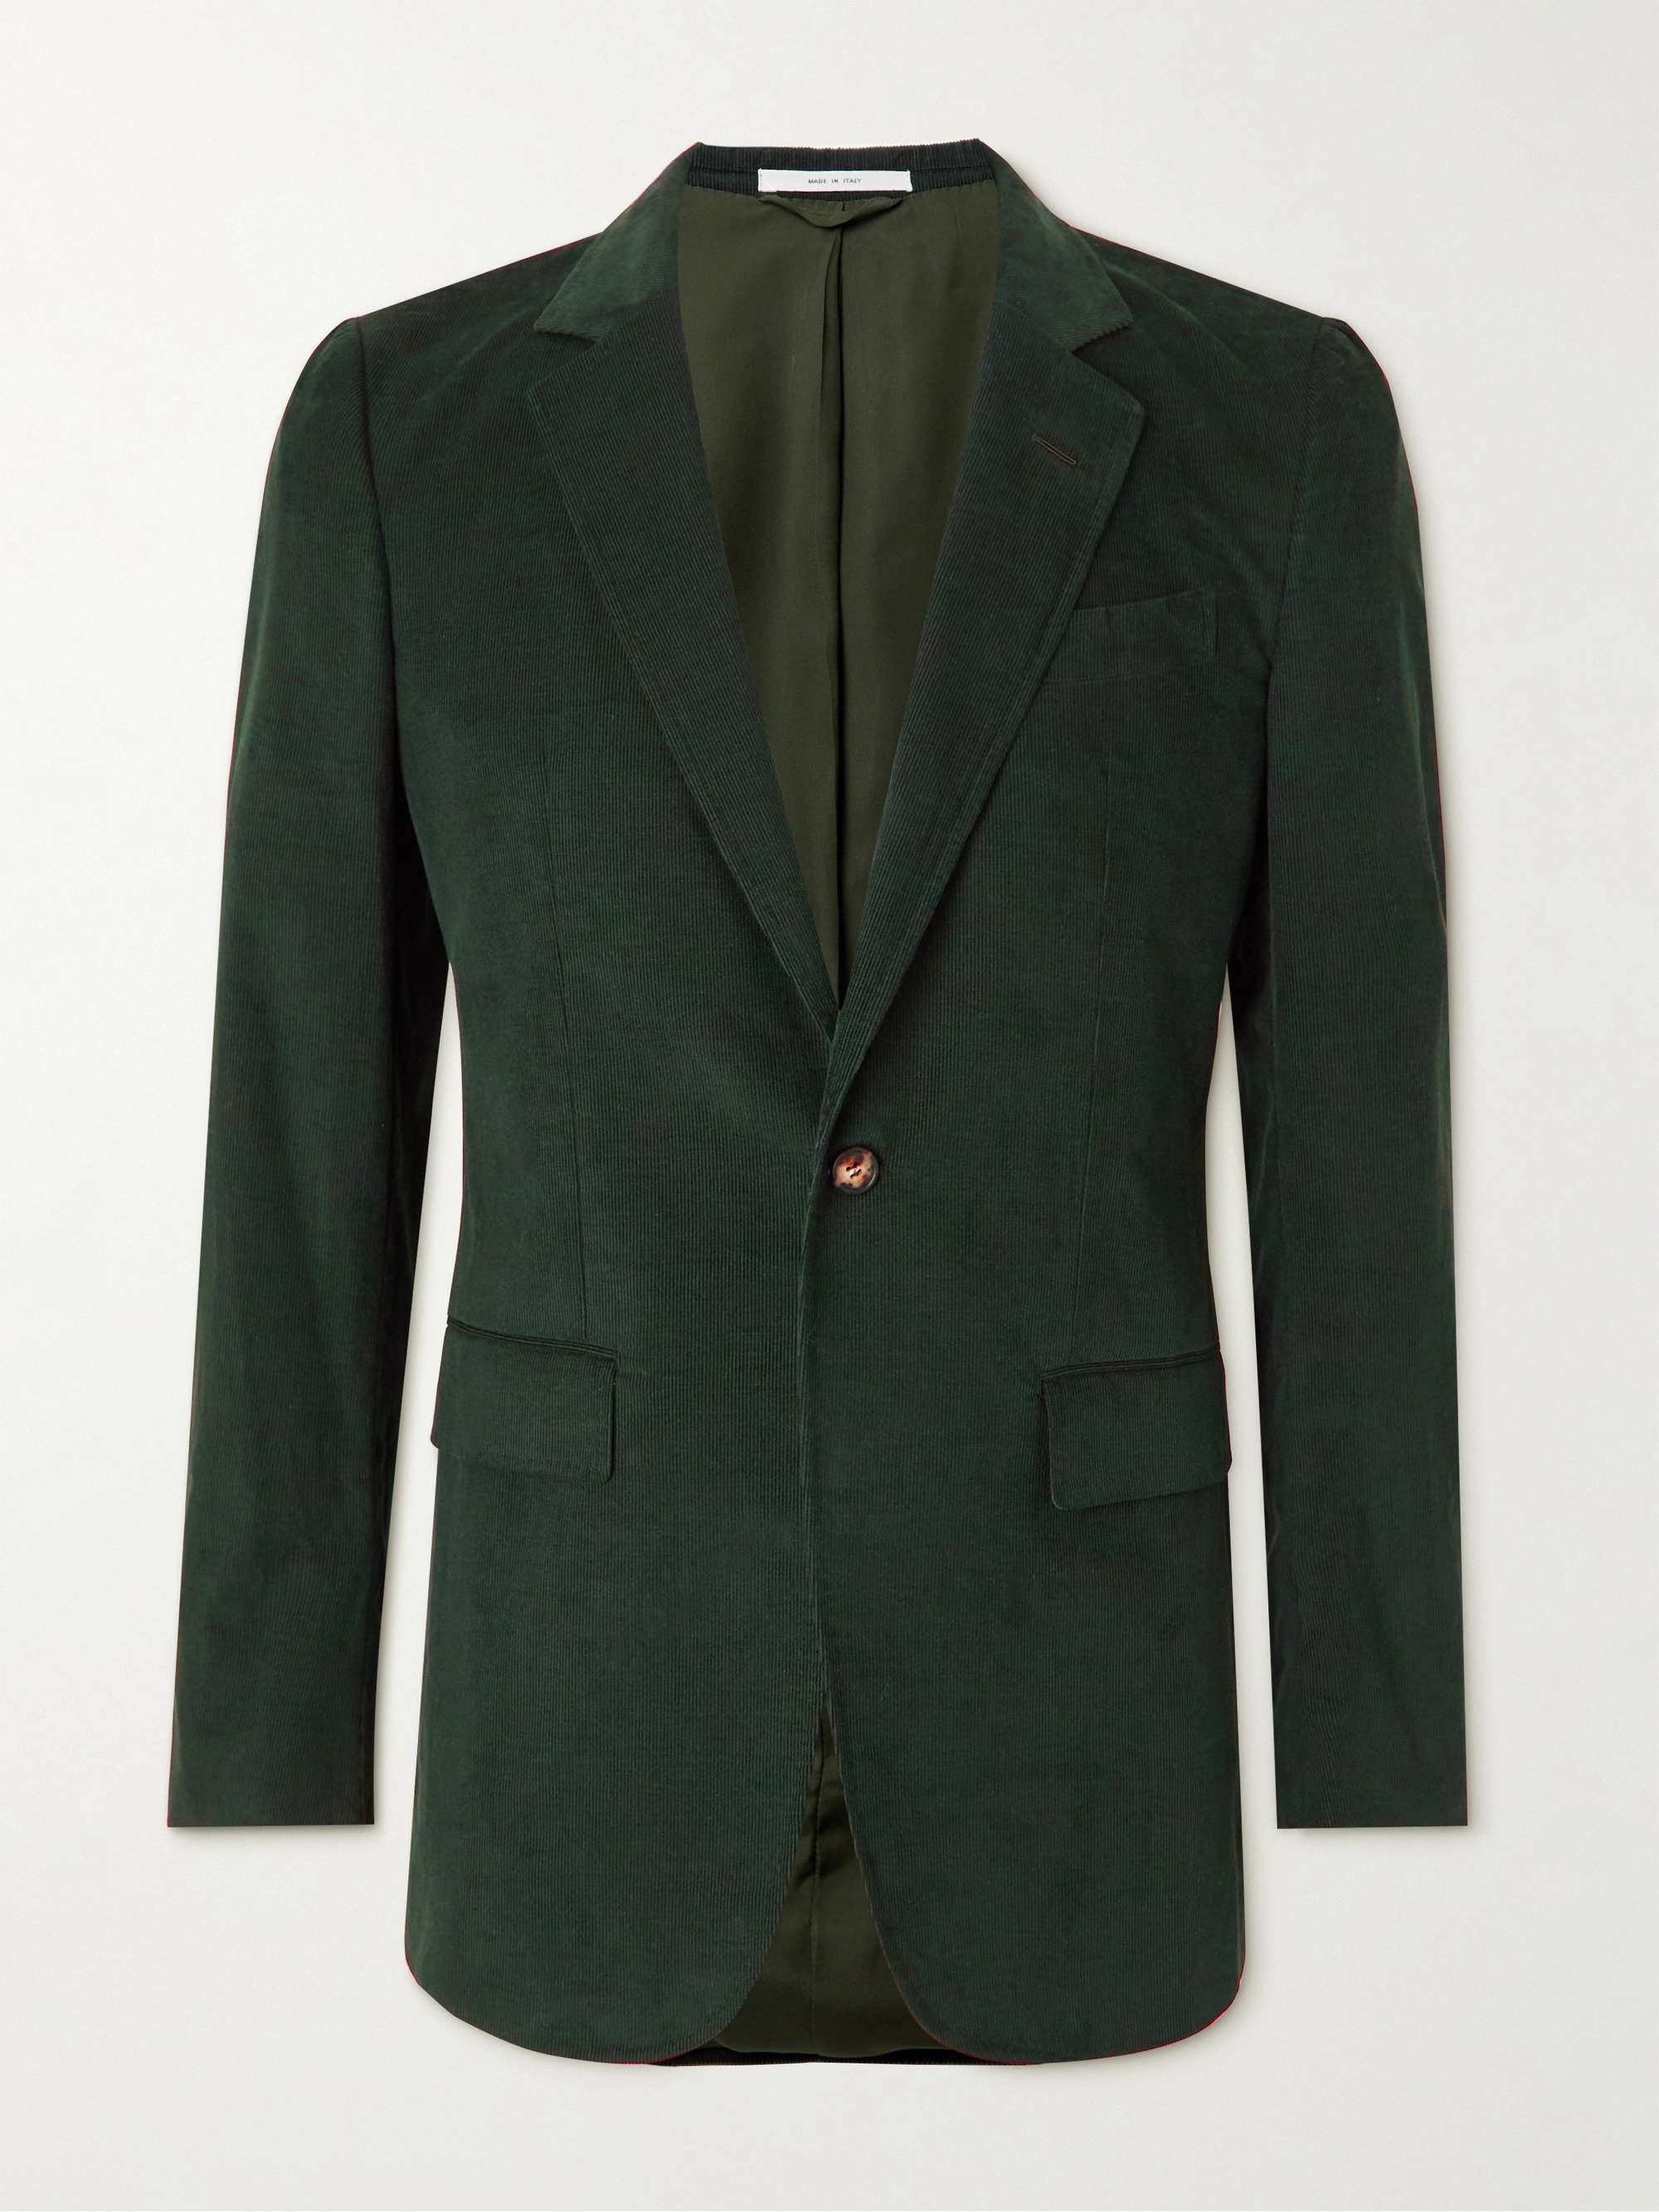 GABRIELA HEARST Damien Cotton-Corduroy Suit Jacket